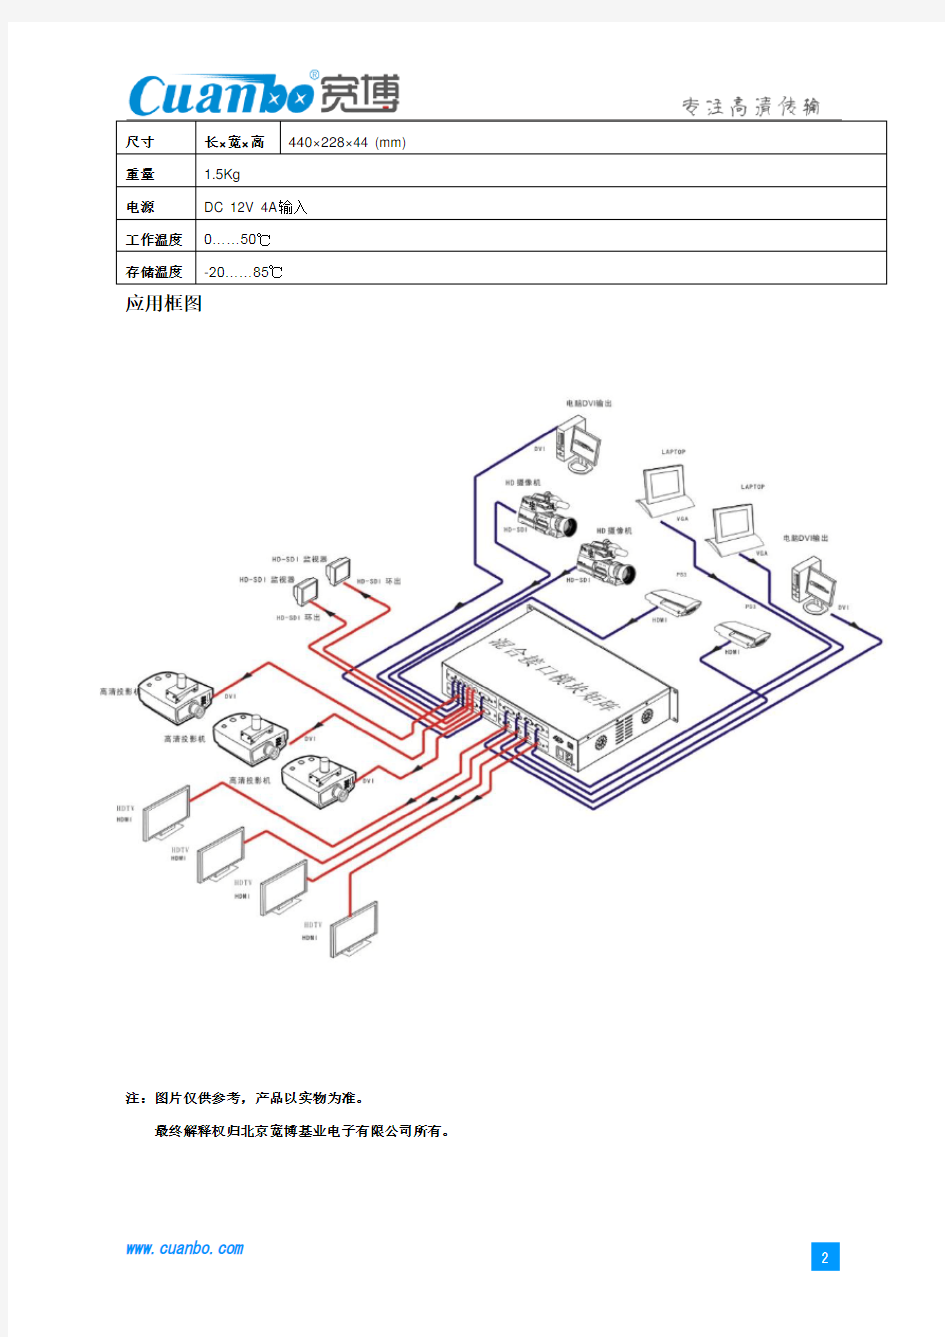 cuanbo—宽博CHM-44高清混合接口矩阵产品简介